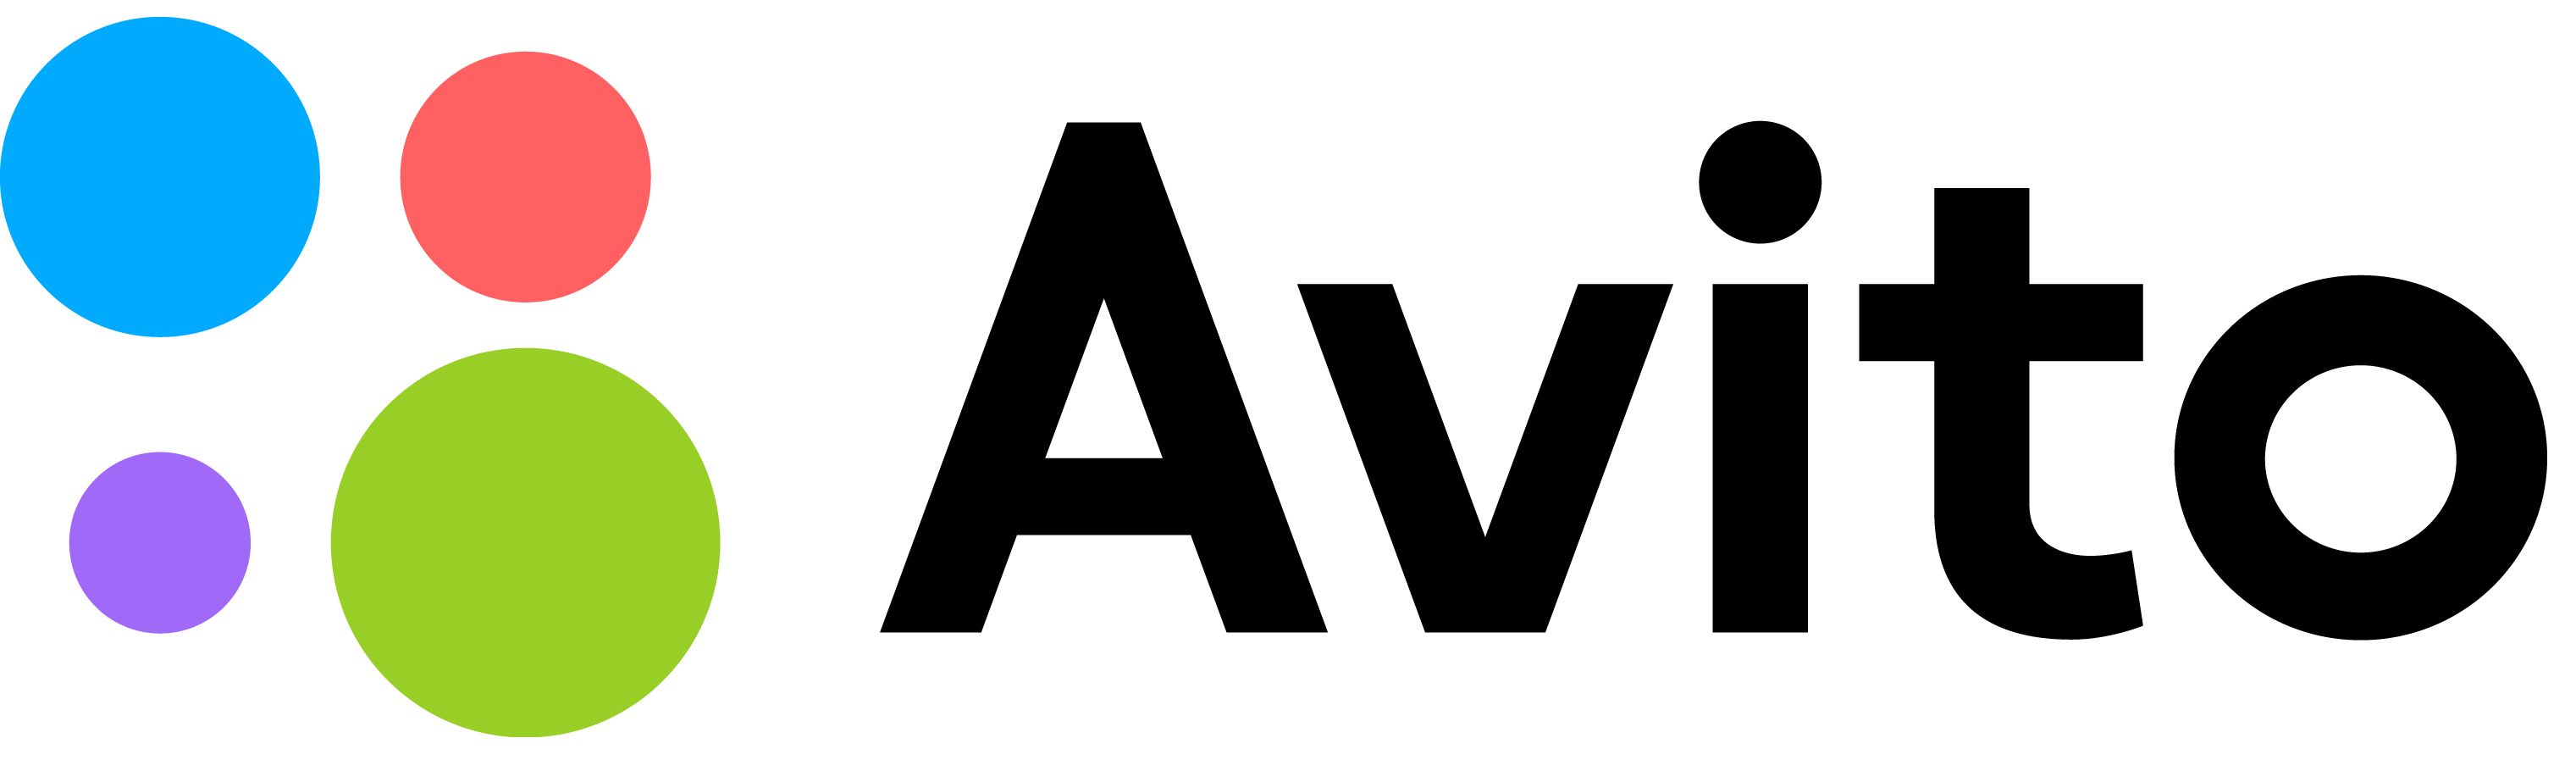 Www span com. Авито логотип. Логотип авито на прозрачном фоне. Авито маркетплейс. Avito значок.